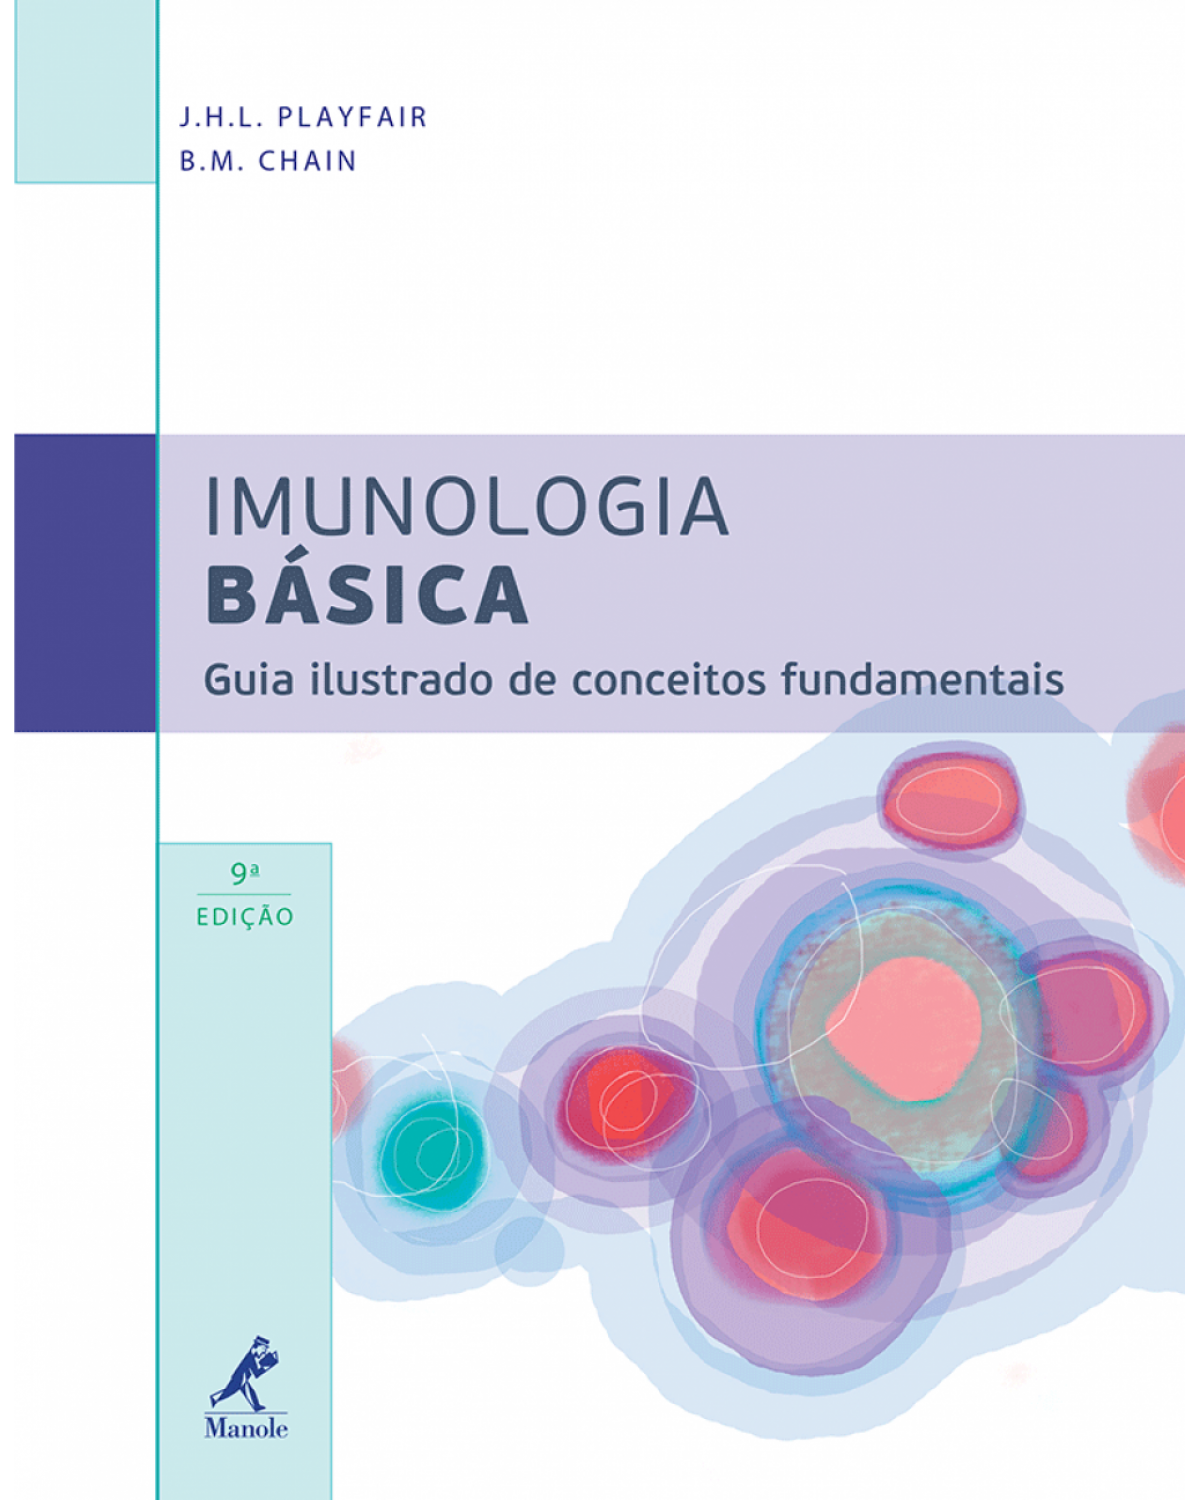 Imunologia básica - Guia ilustrado de conceitos fundamentais - 9ª Edição | 2013